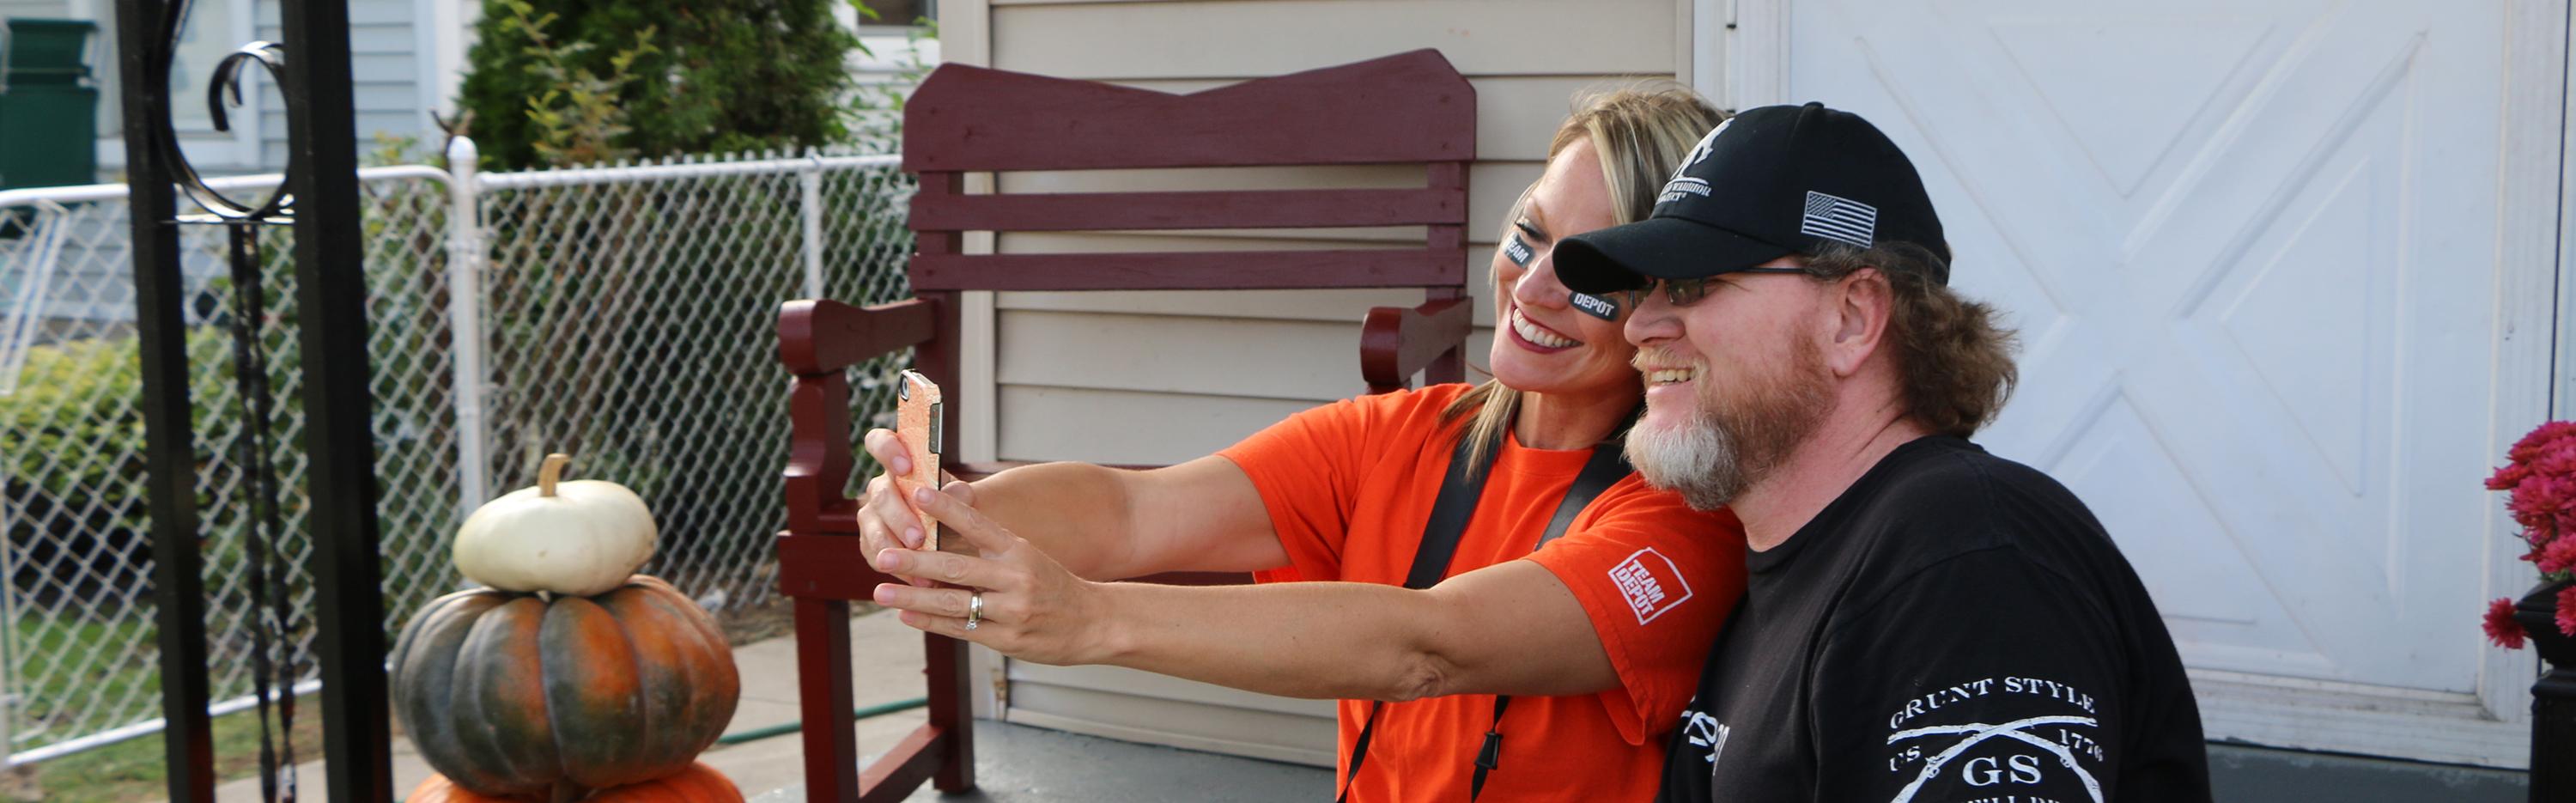 Team Depot volunteer takes a service selfie with veteran